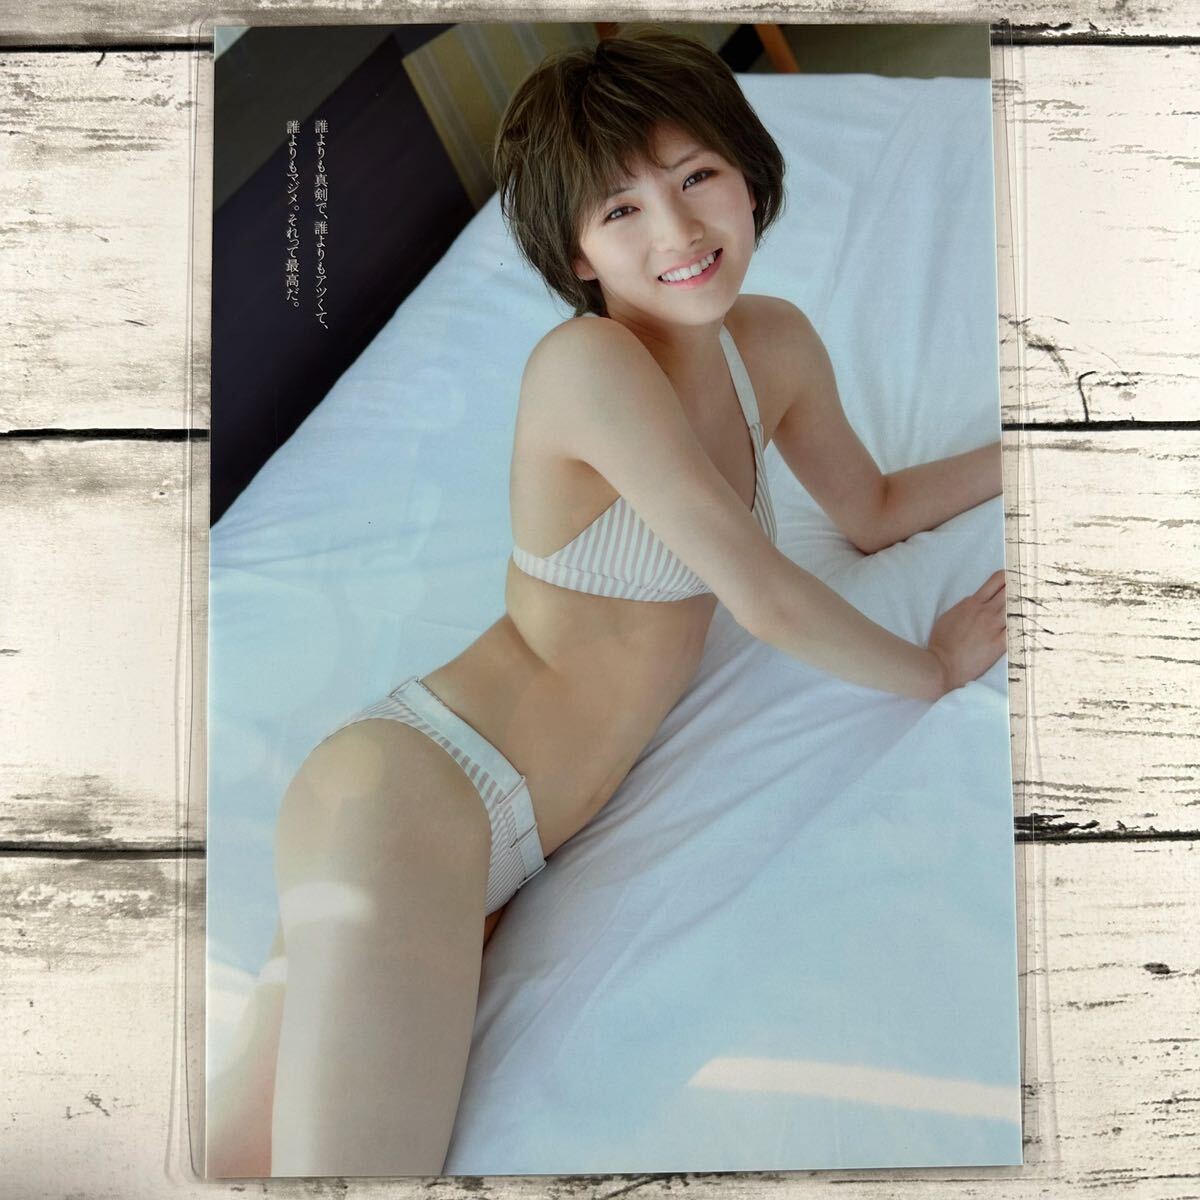 [ высокое качество ламинирование отделка ][ Okada Nana AKB48 ] Play Boy 2018 год 13 журнал вырезки 8P+ обложка B5 плёнка купальный костюм bikini model актер женщина super 